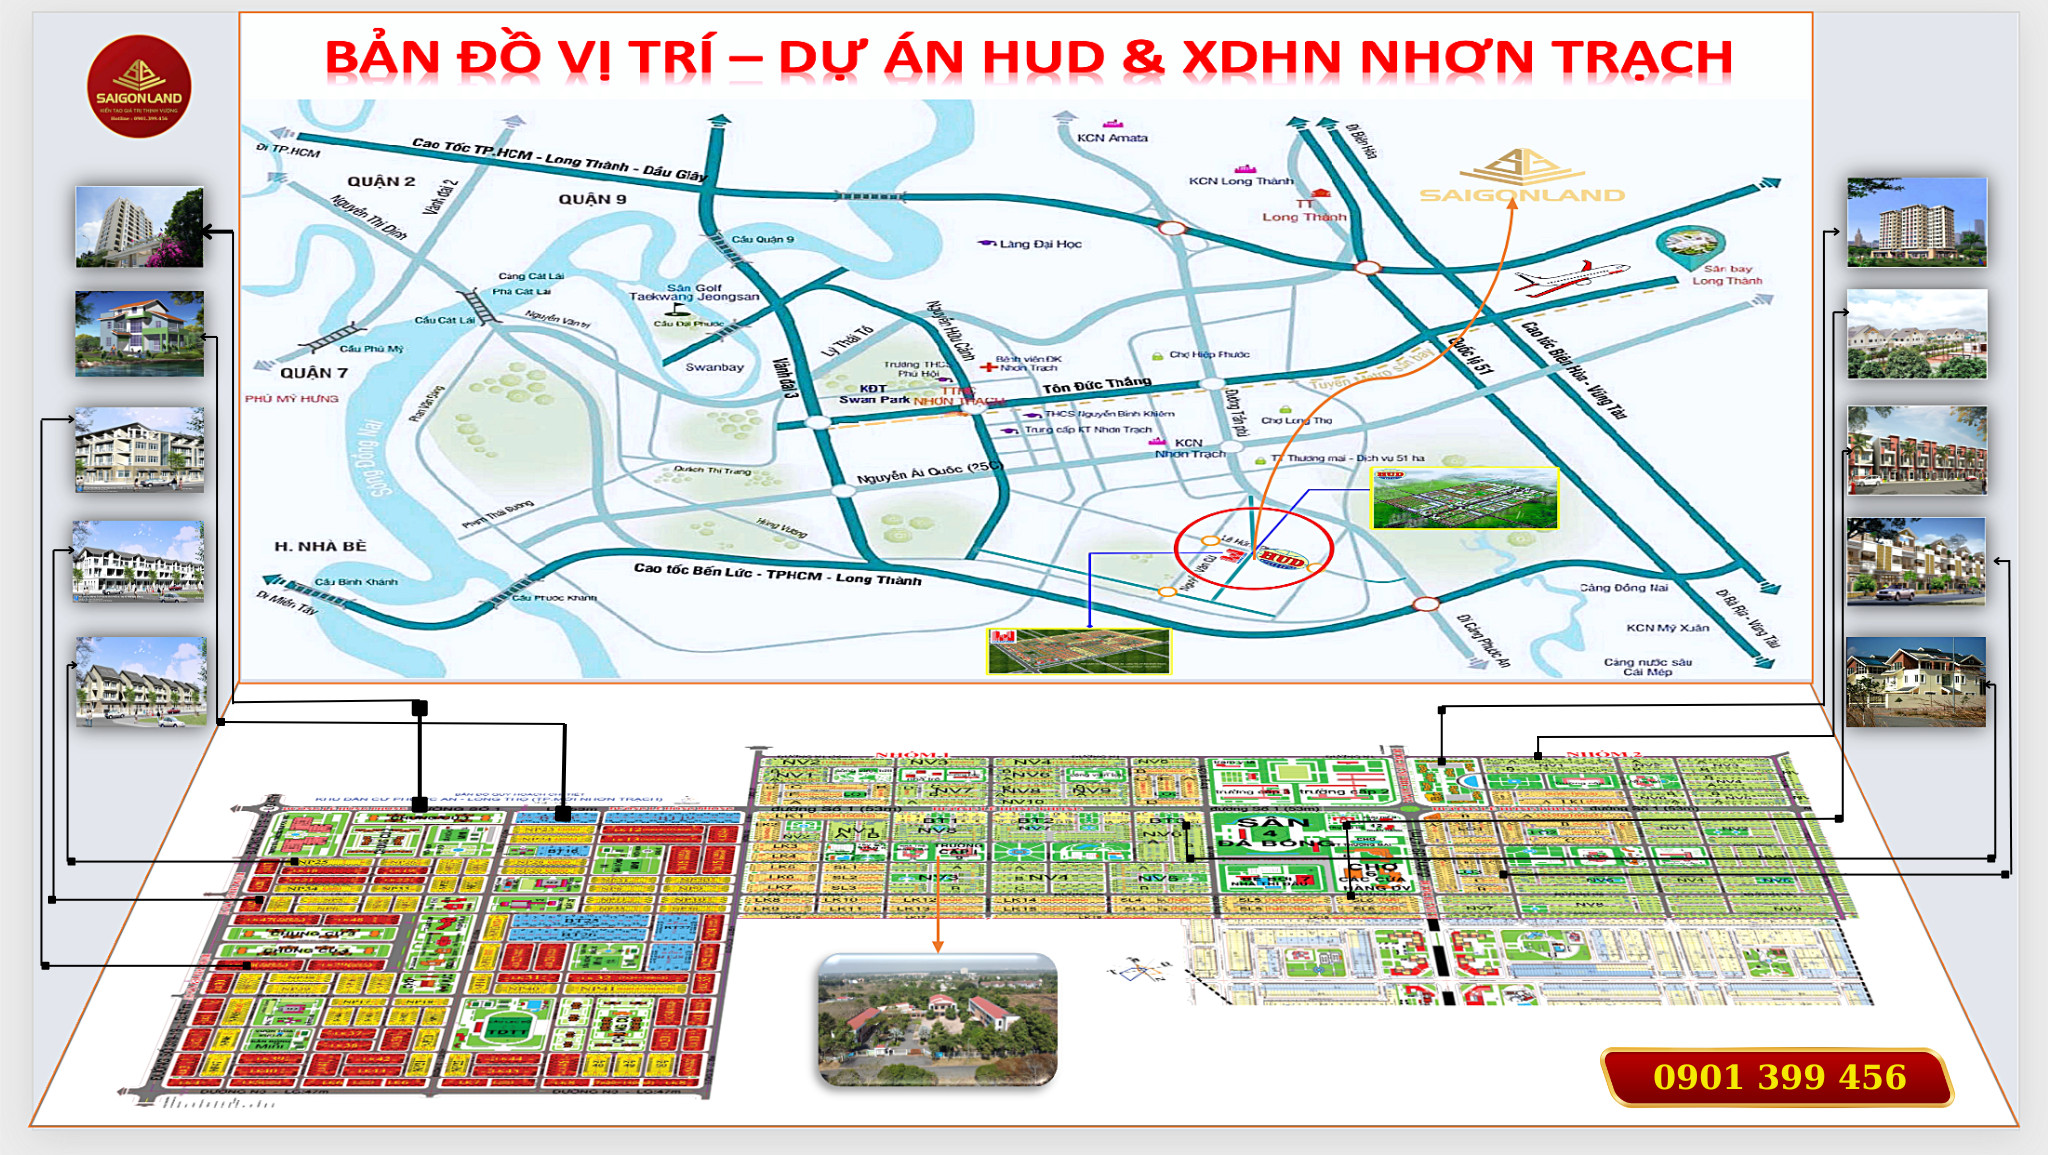 Saigonland Nhơn Trạch - Mua bán đất Nhơn Trạch - Dự án Hud Nhơn Trạch Đồng Nai. - Ảnh chính